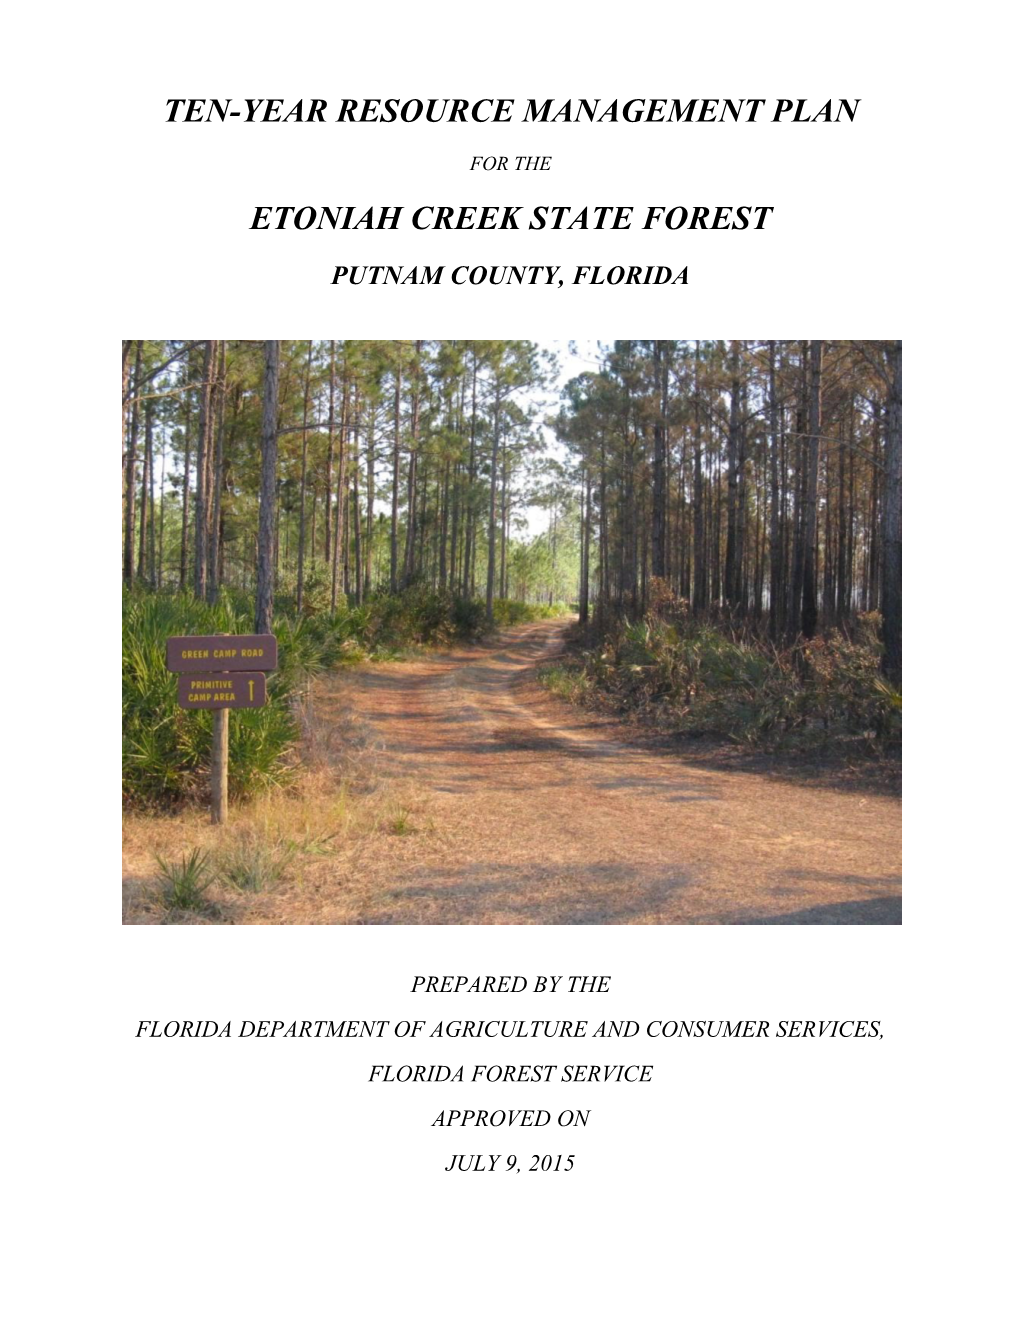 Etoniah Creek State Forest Management Plan